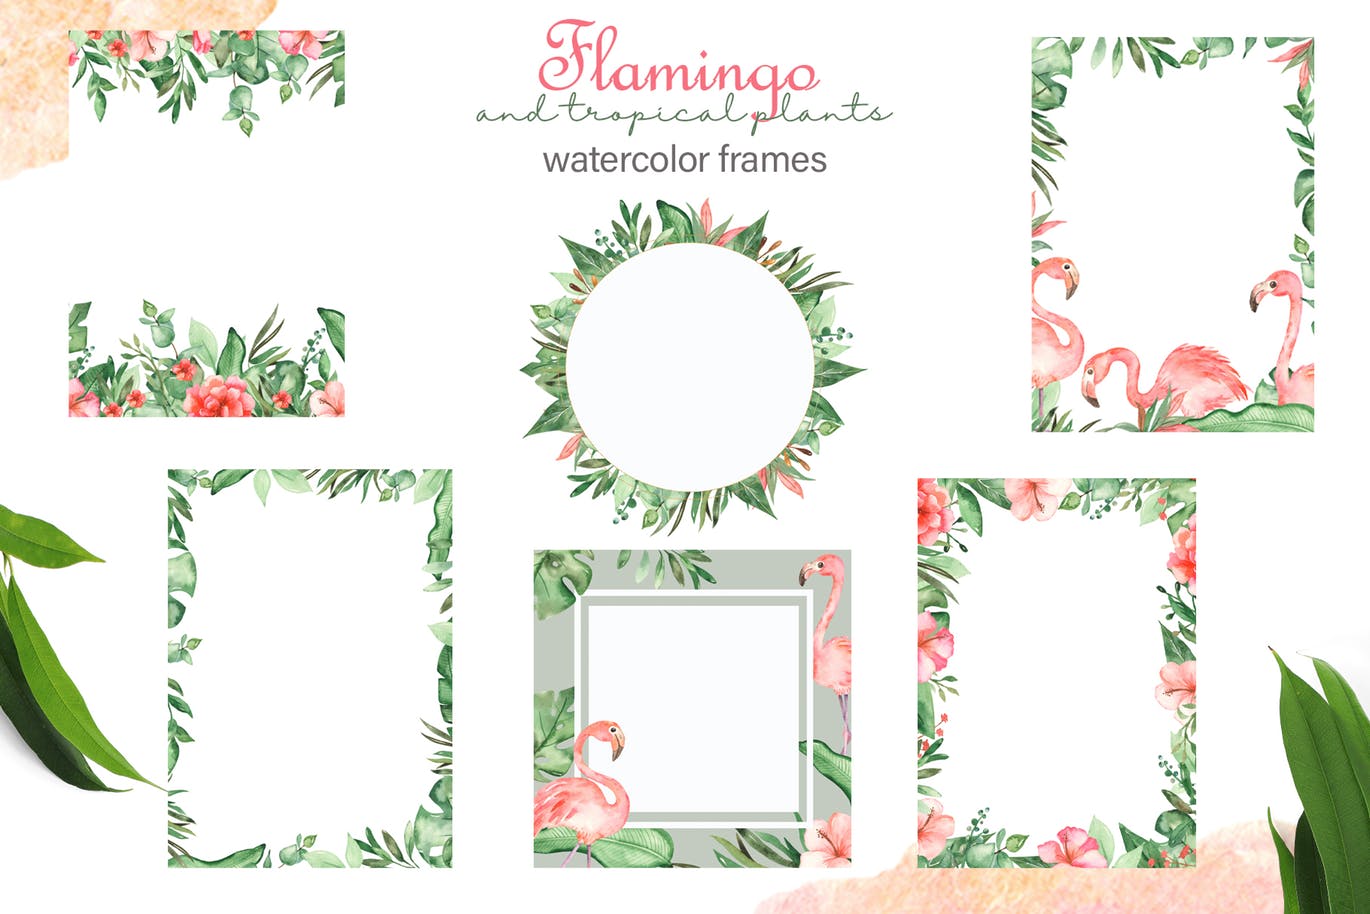 火烈鸟＆热带植物水彩插画素材 Watercolor flamingos and tropical plants插图(5)